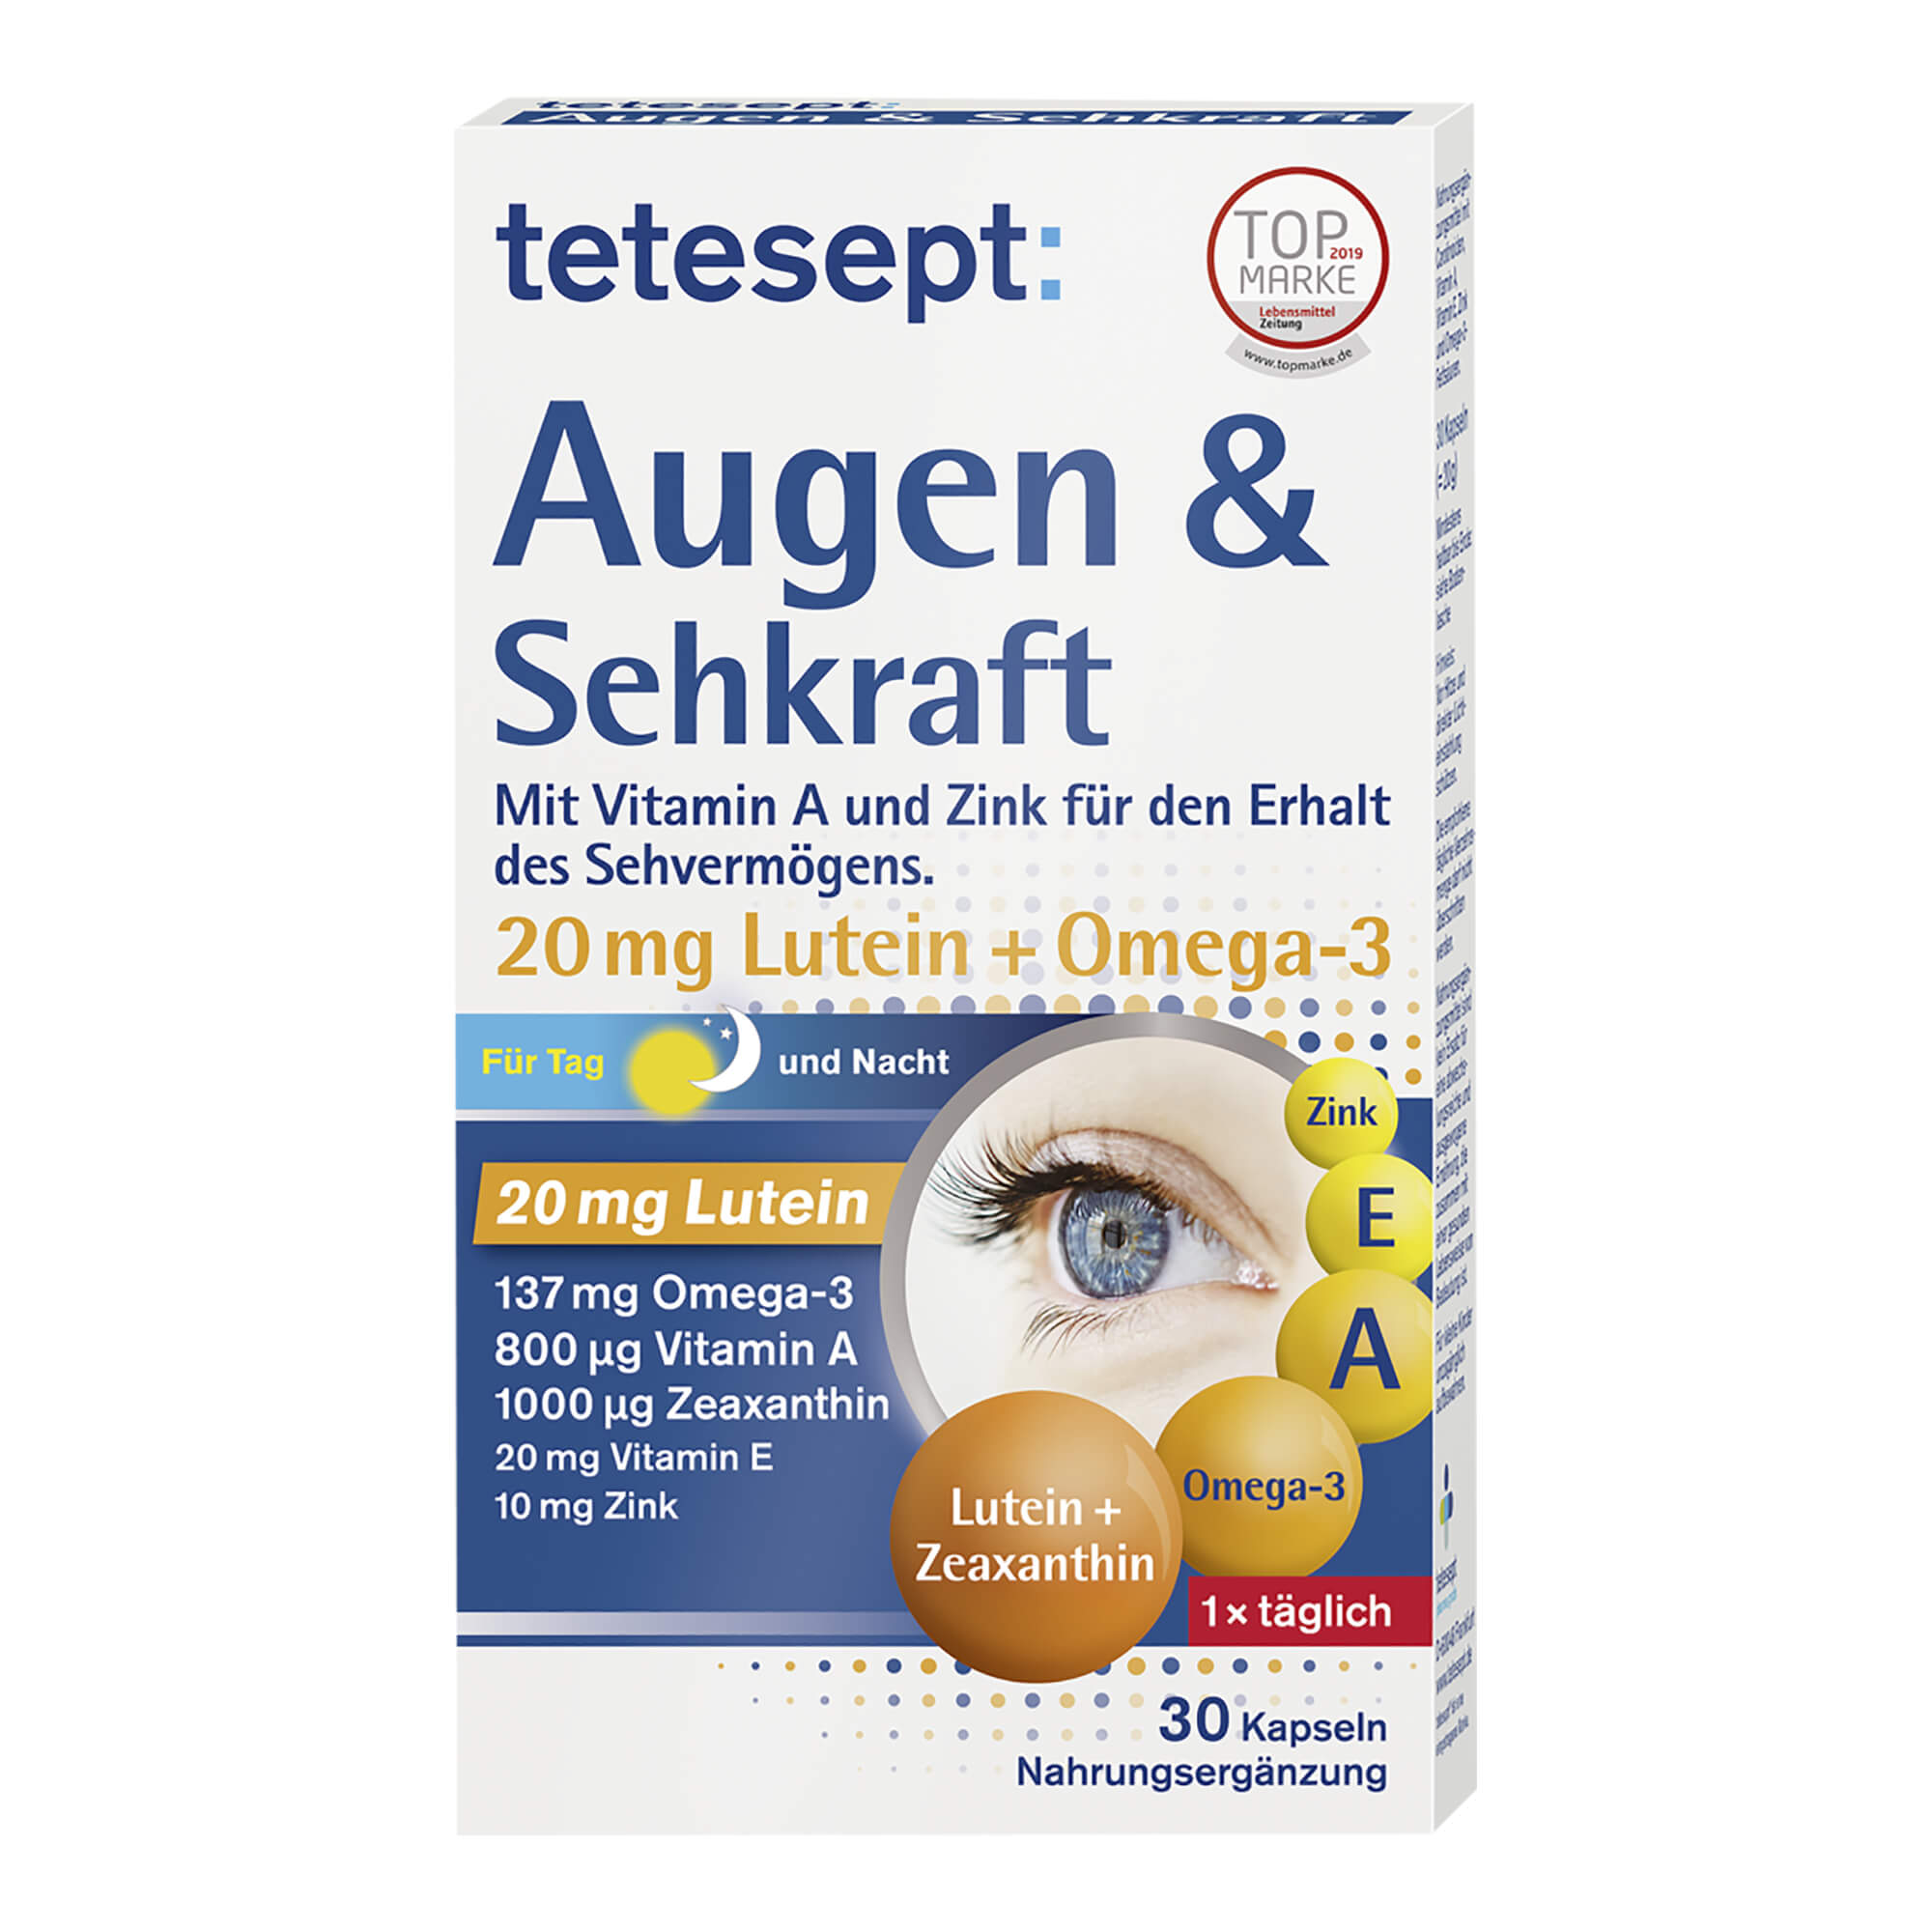 Nahrungsergänzungsmittel mit Lutein und Omega-3. Für den Erhalt des Sehvermögens und den Zellschutz.